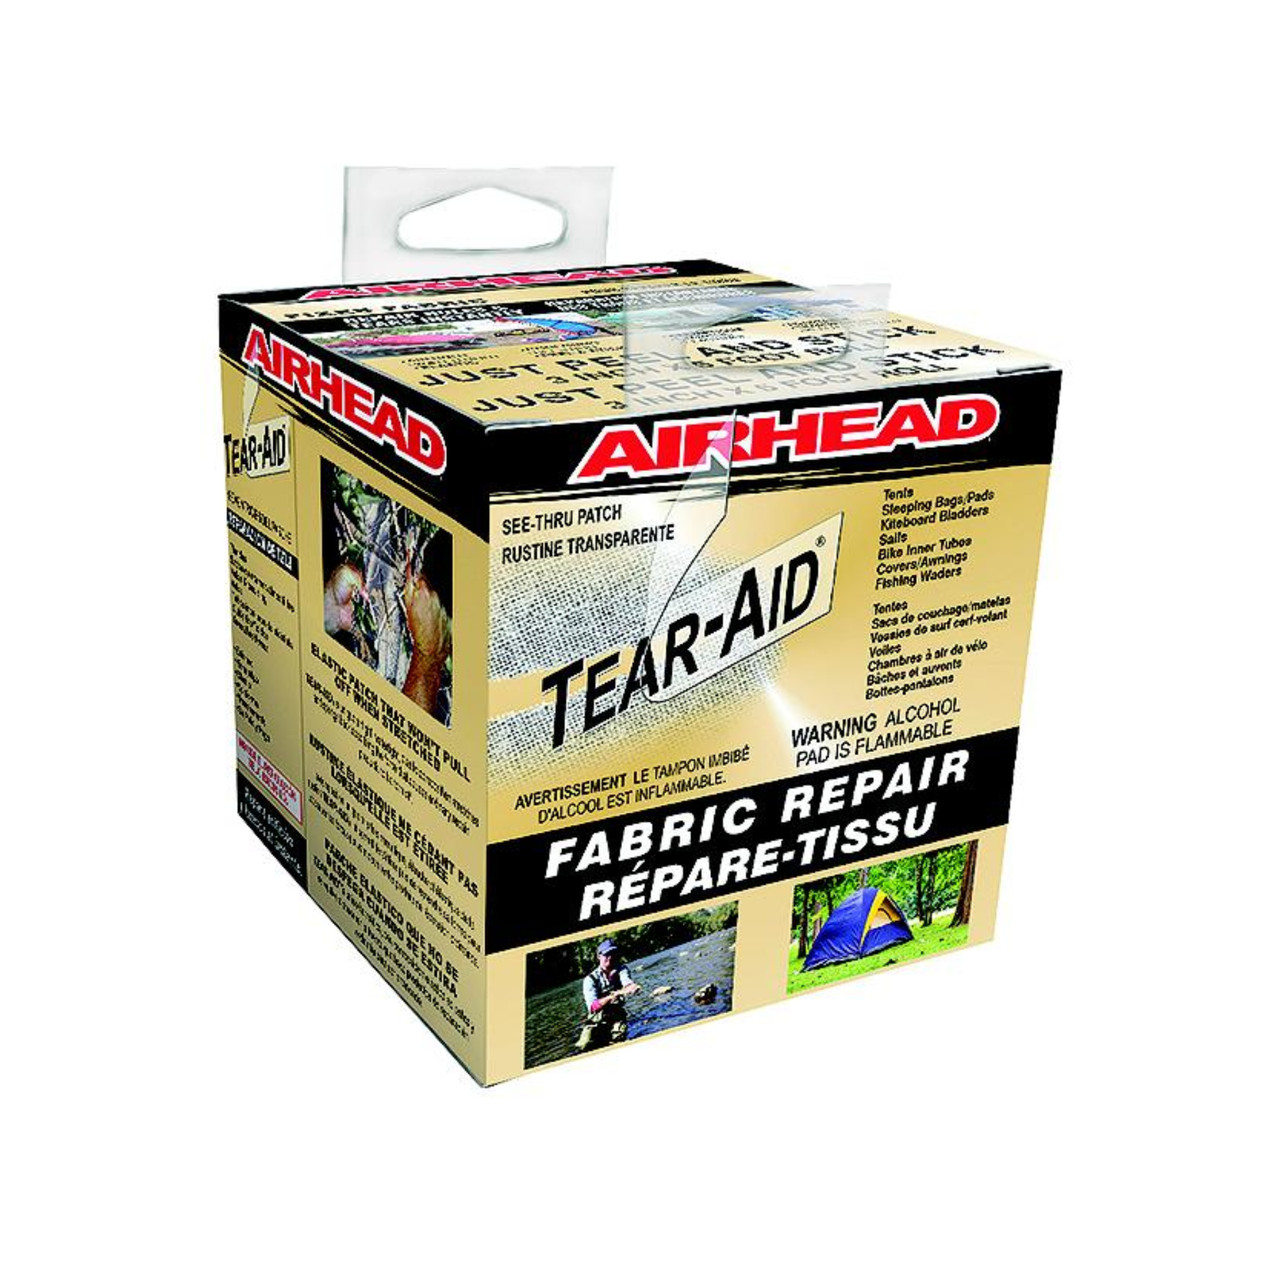 Airhead New Tear Aid Repair Type A Fabric, 253-AHTR1AR